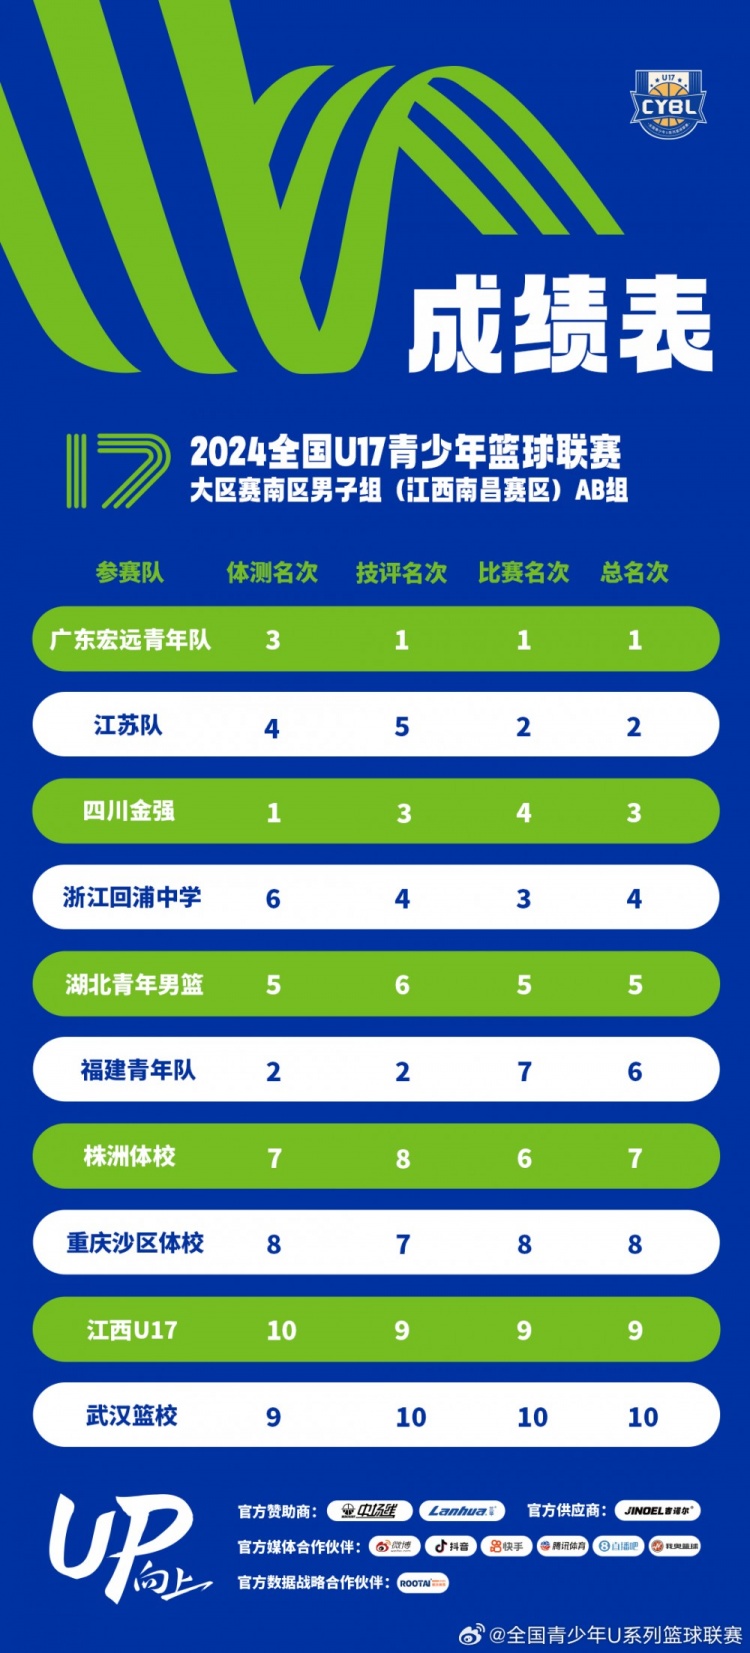 U17南区男子组16强出炉 前十六强决赛预计于10月在云南举行